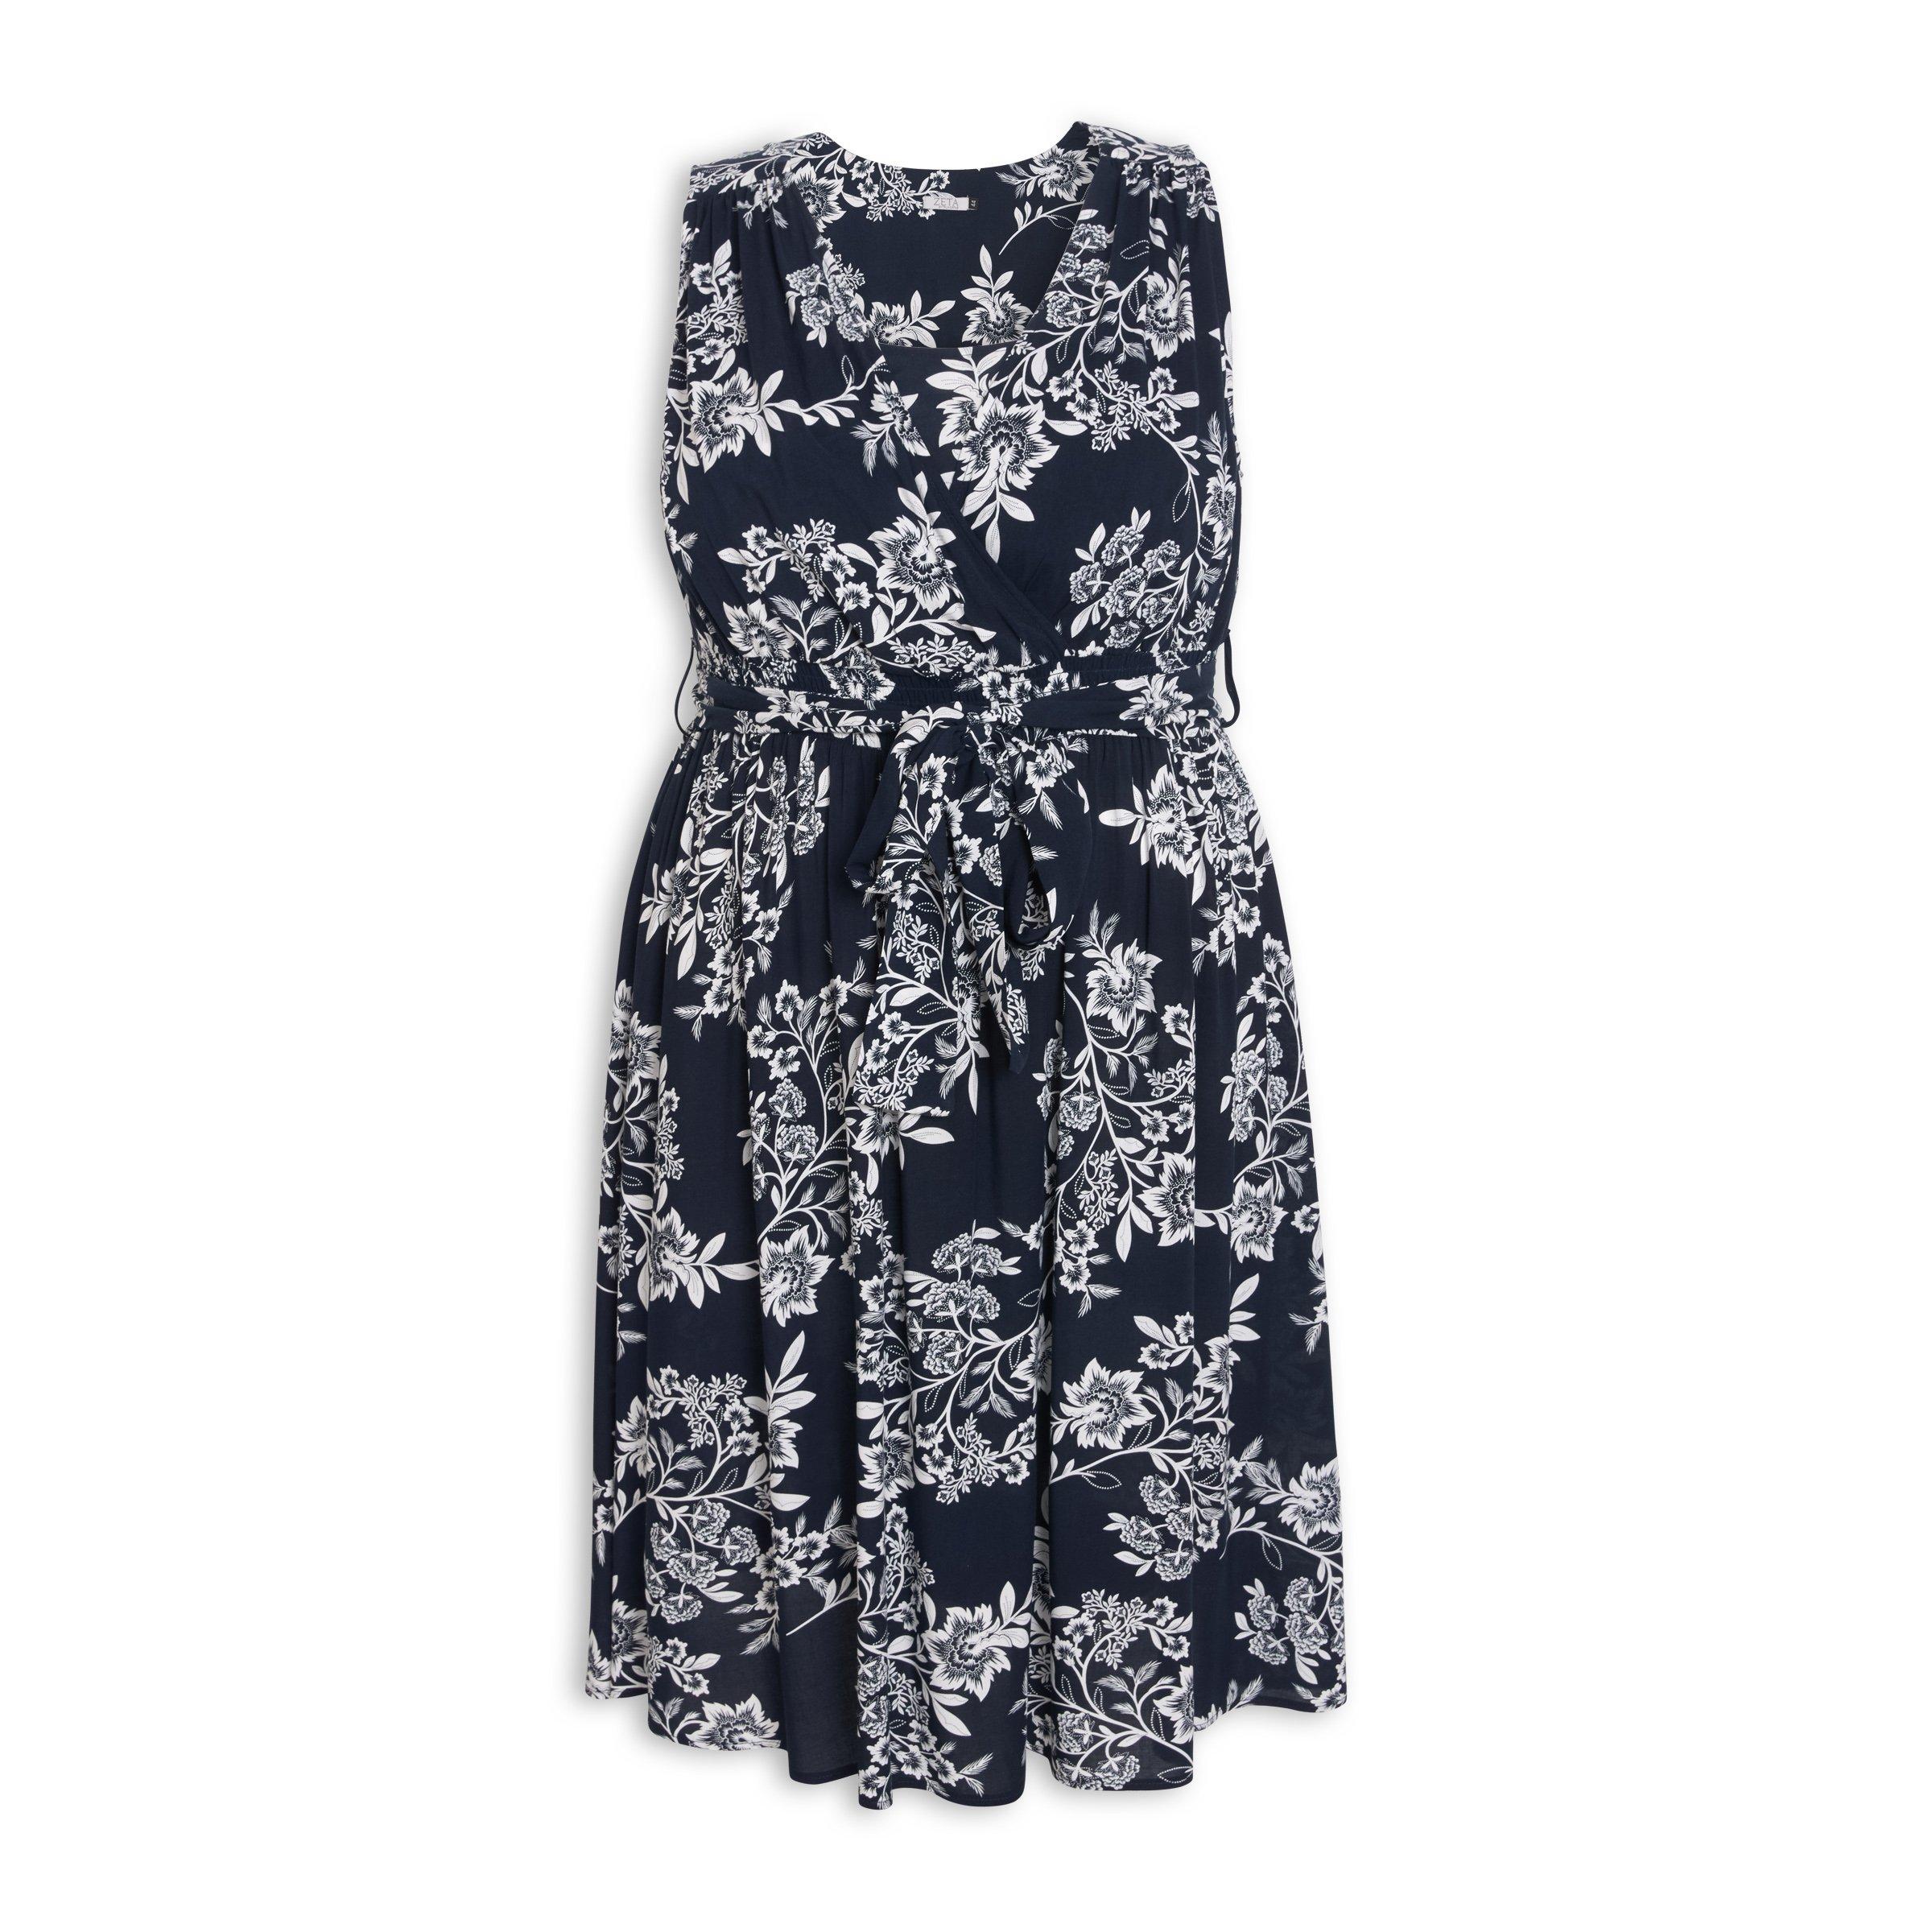 Buy Zeta Floral Printed Dress Online | Truworths